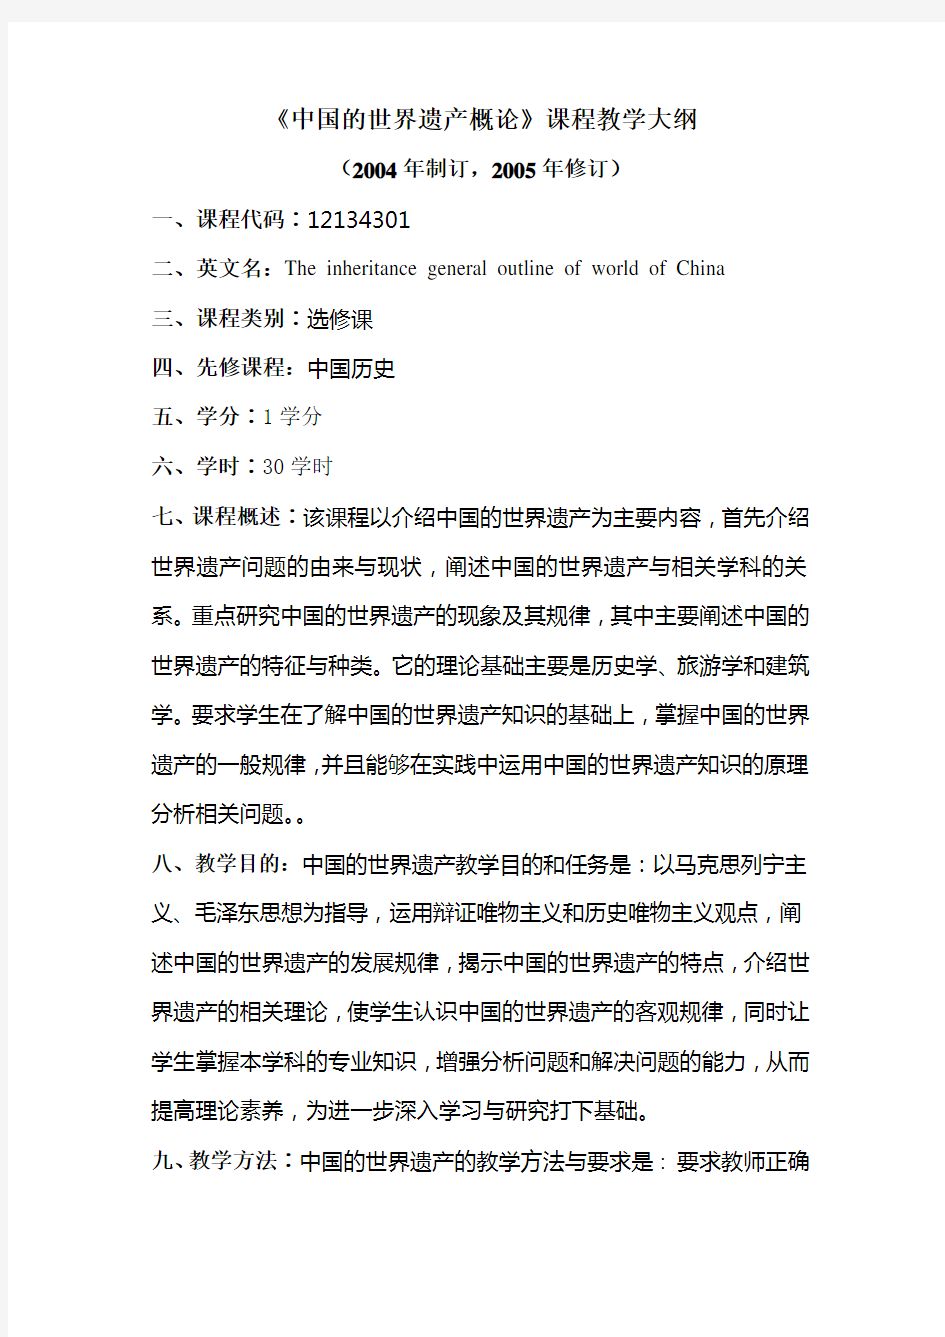 中国的世界遗产概论(历史教育专业)课程教学大纲